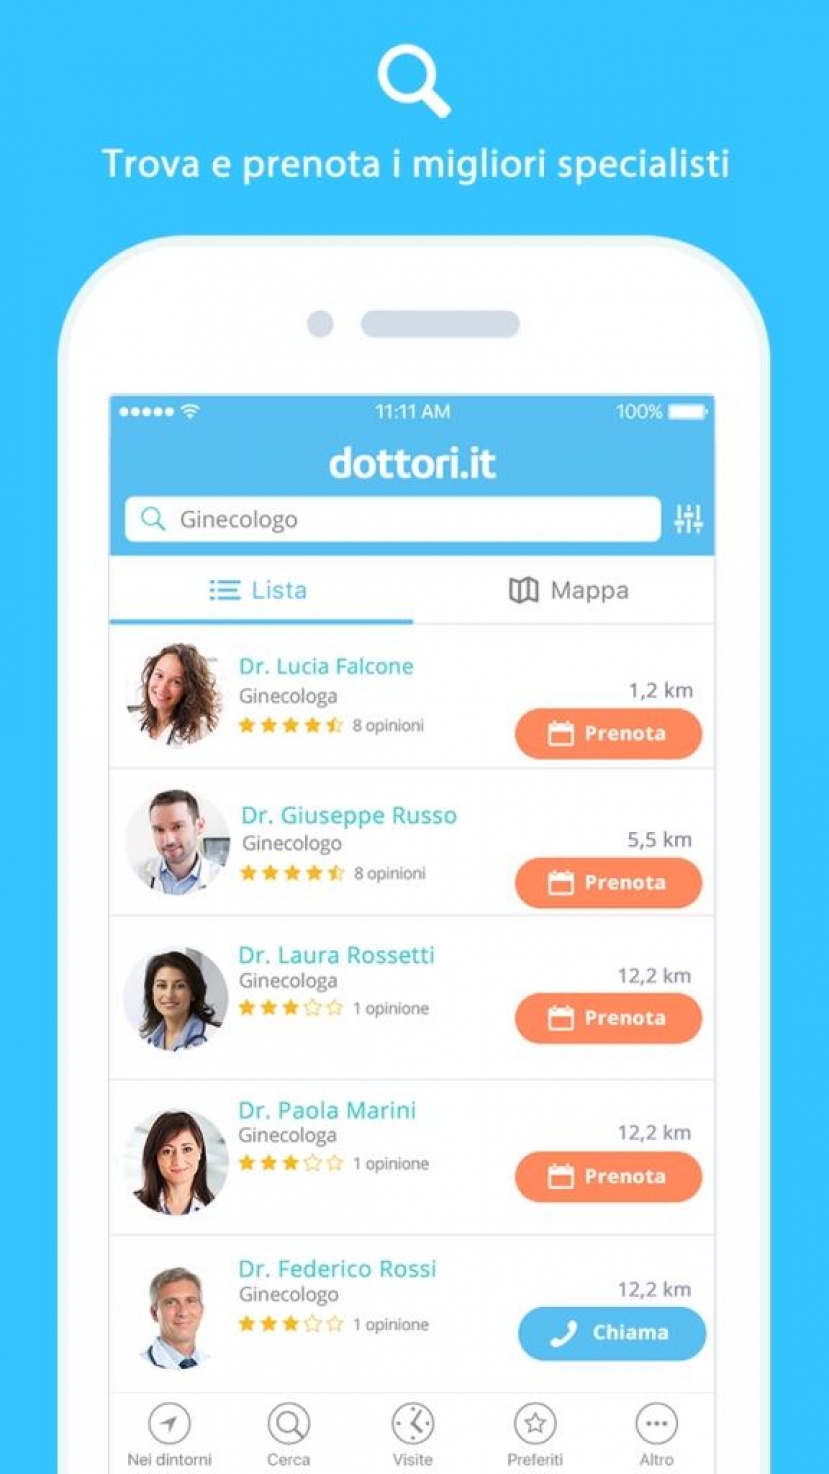 Dottori.it lancia l’app per cercare il proprio medico